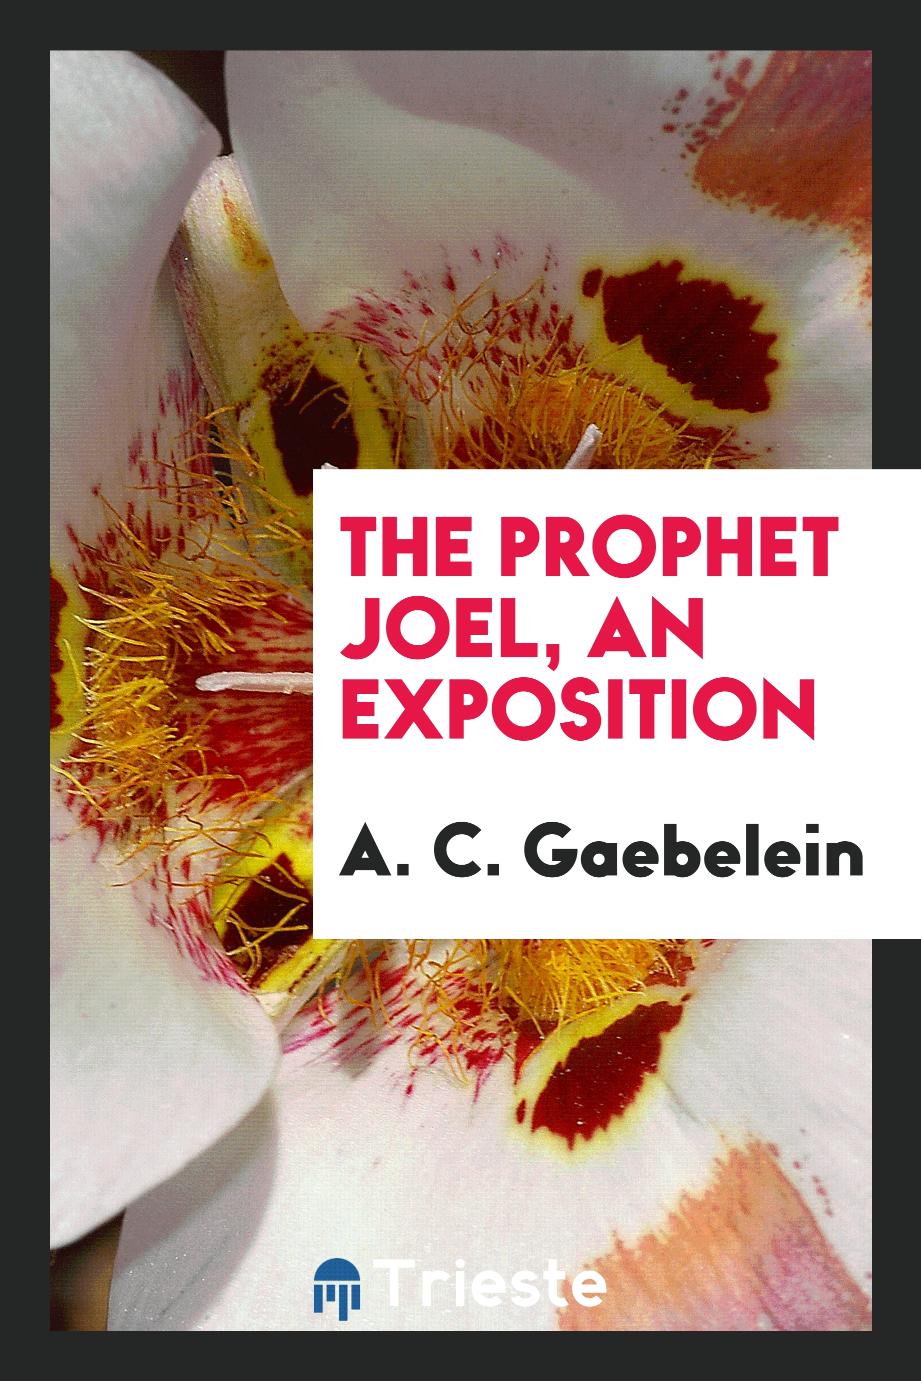 The Prophet Joel, an exposition